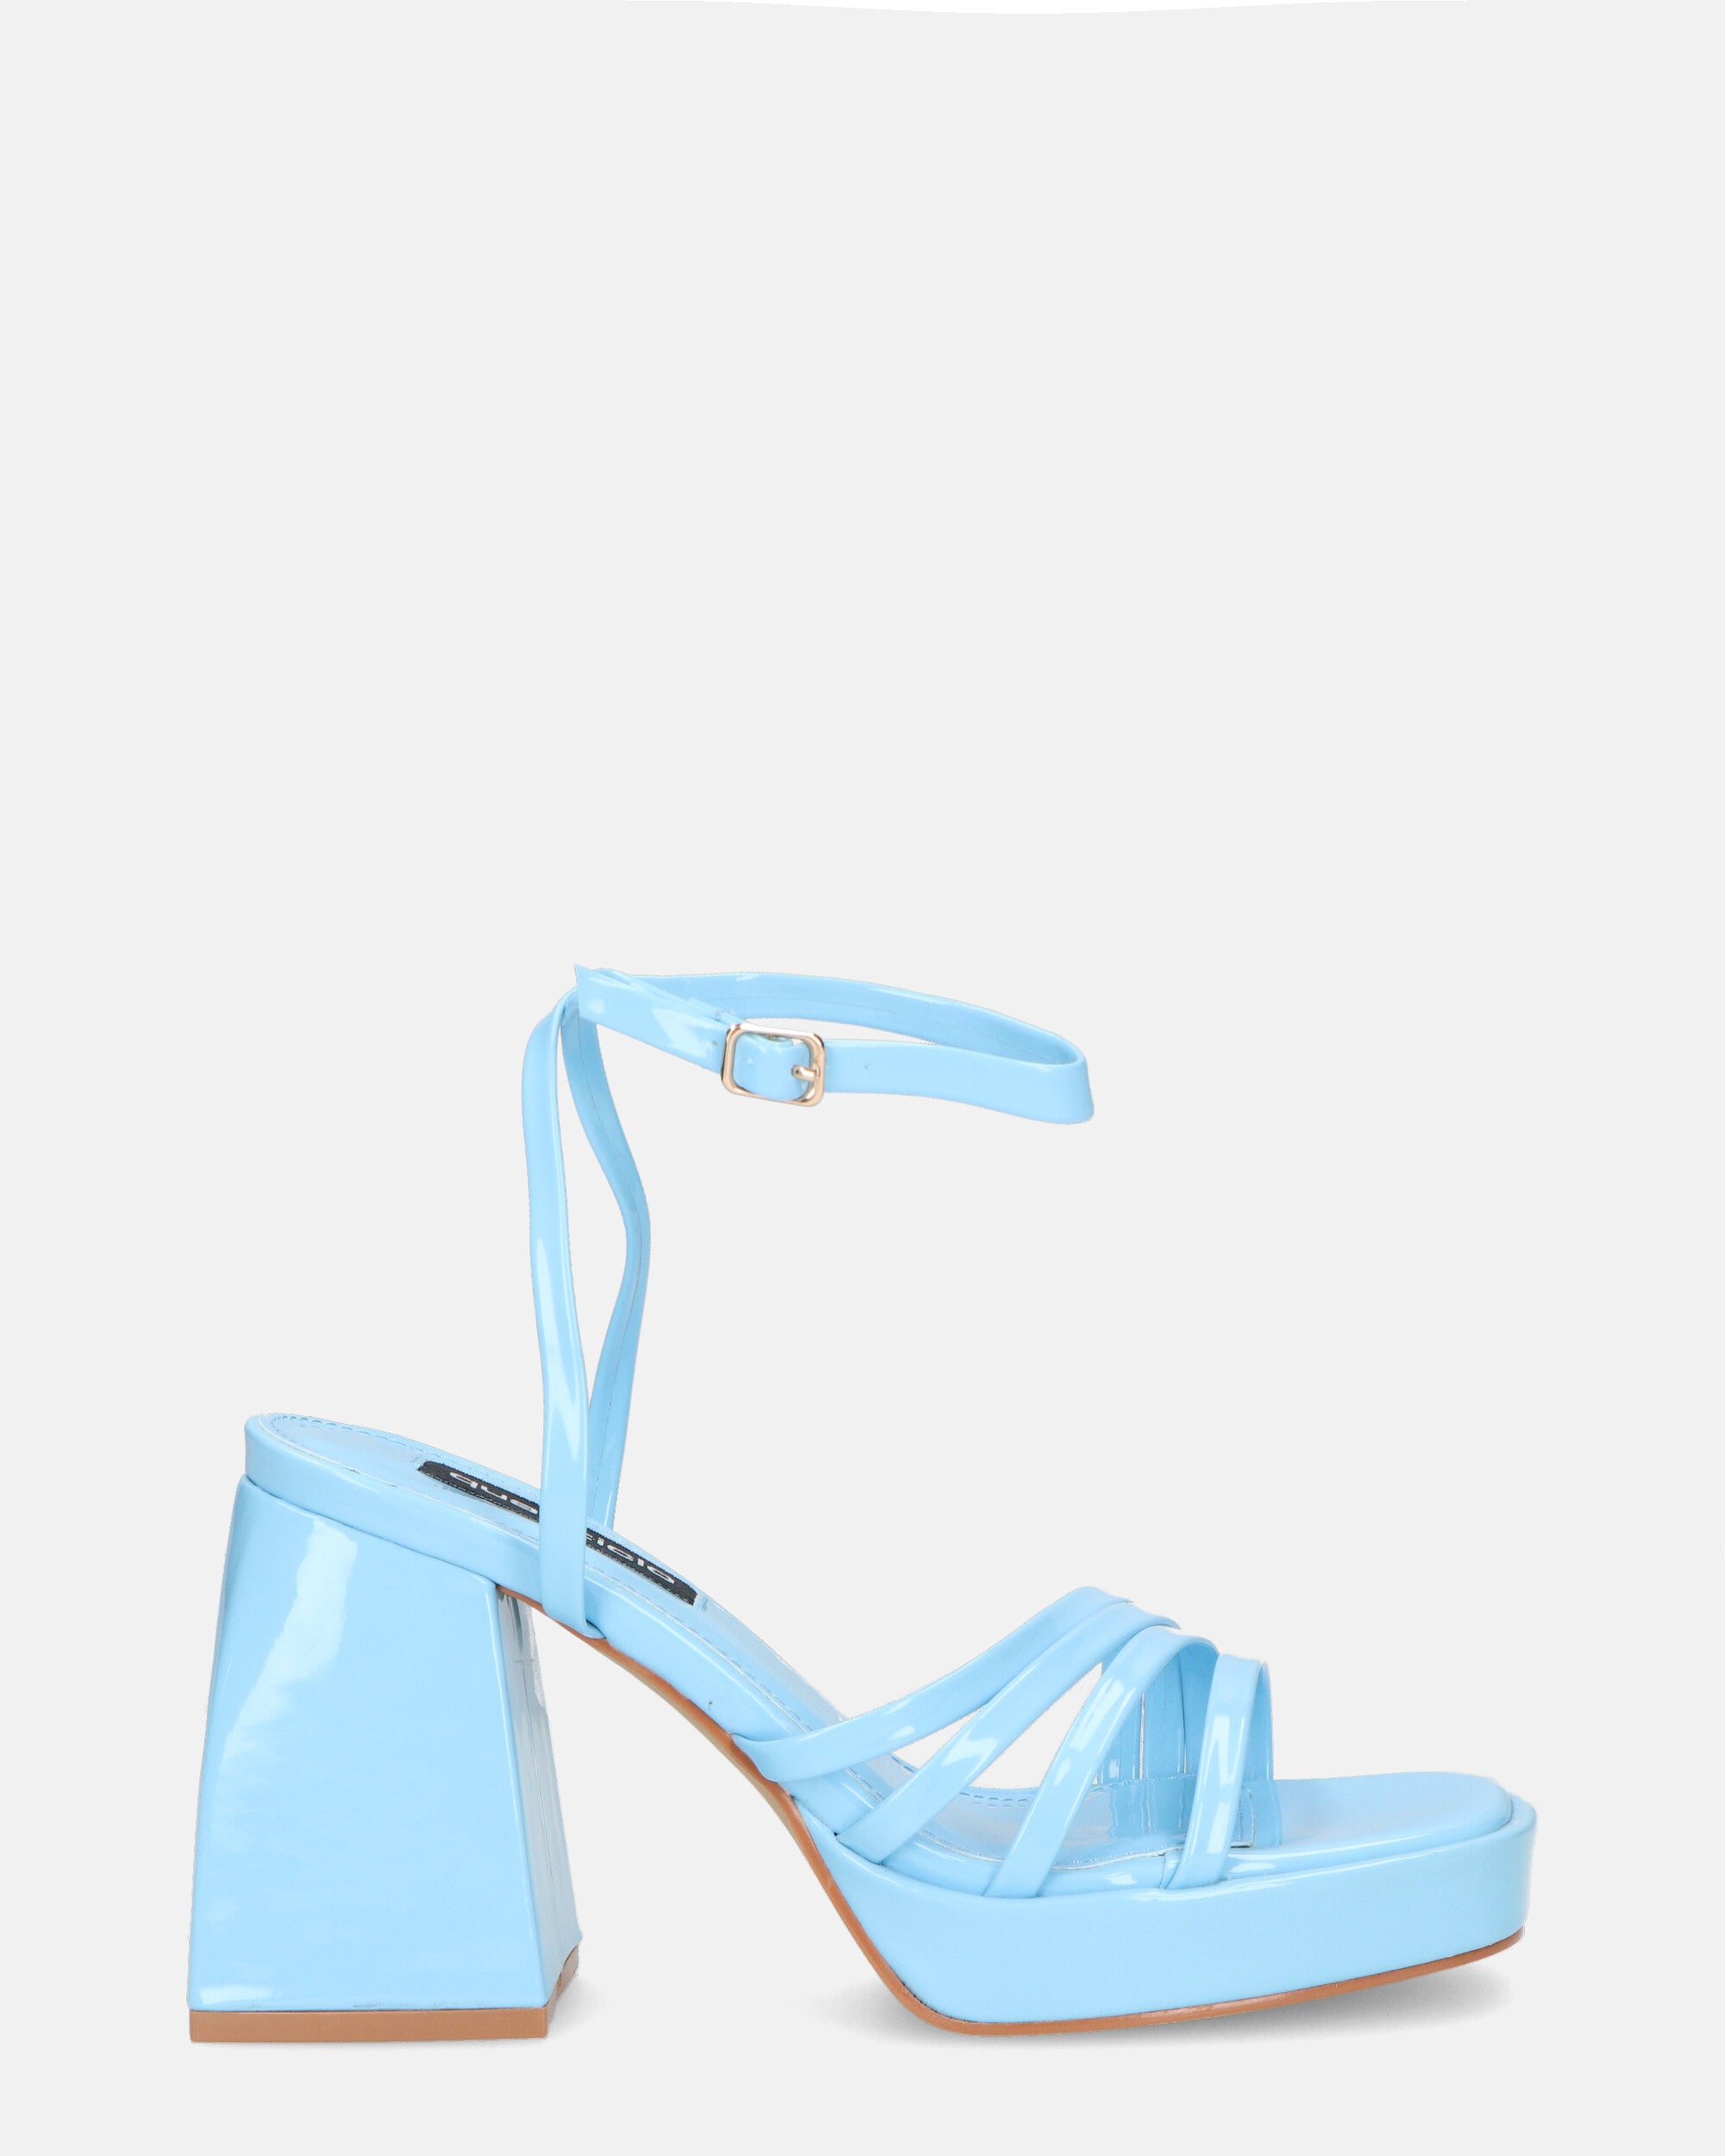 WINONA - sandales en verre bleu clair à talon carré